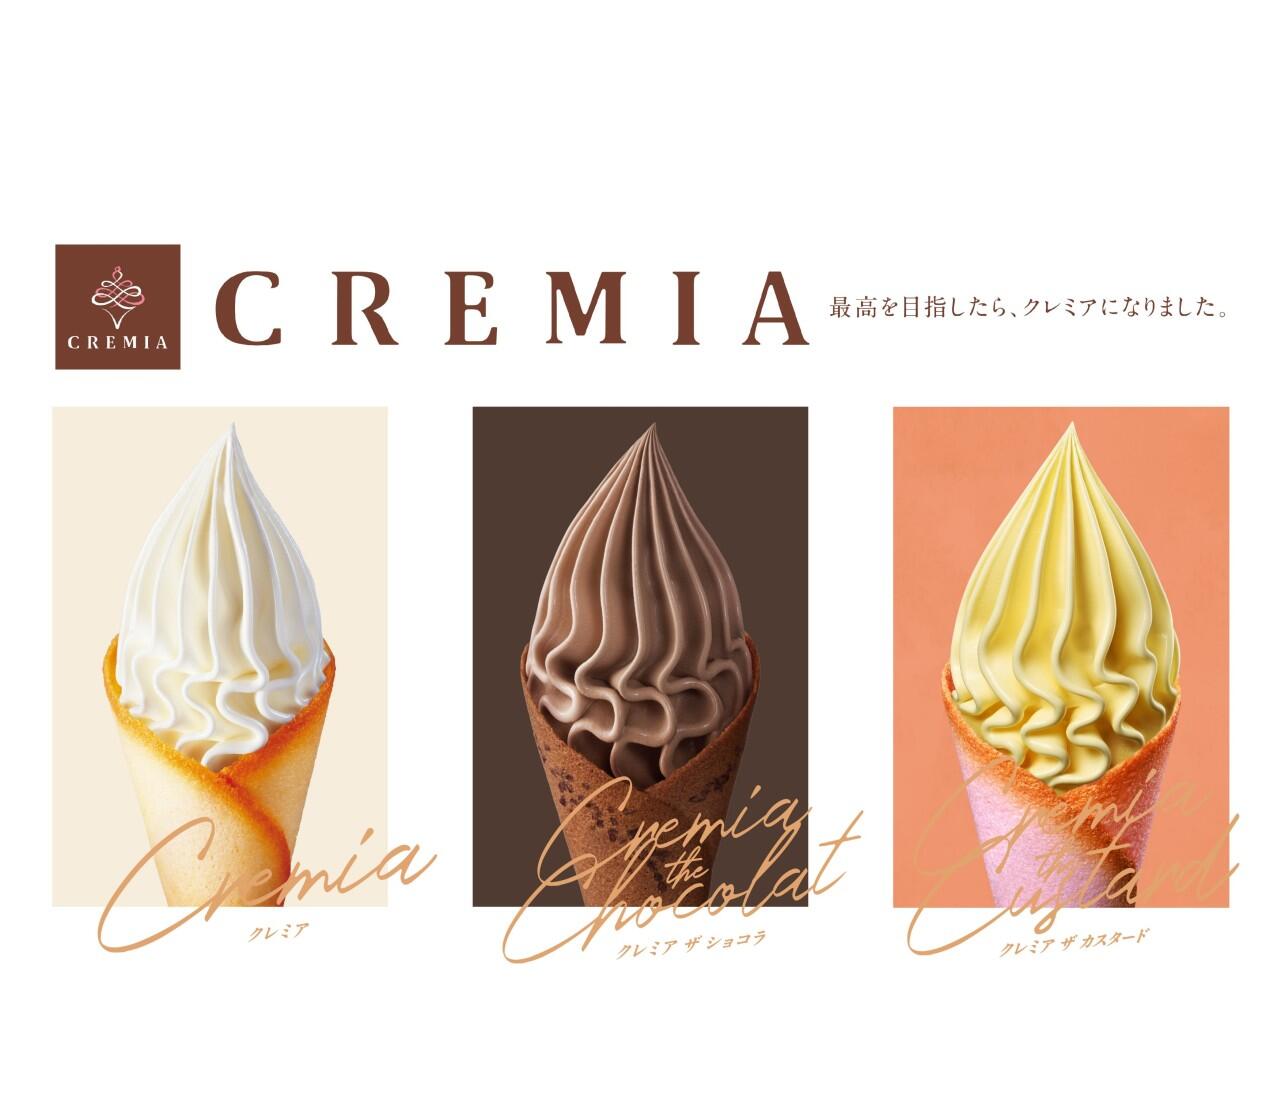 こだわりから生まれたソフトクリーム「CREMIA」